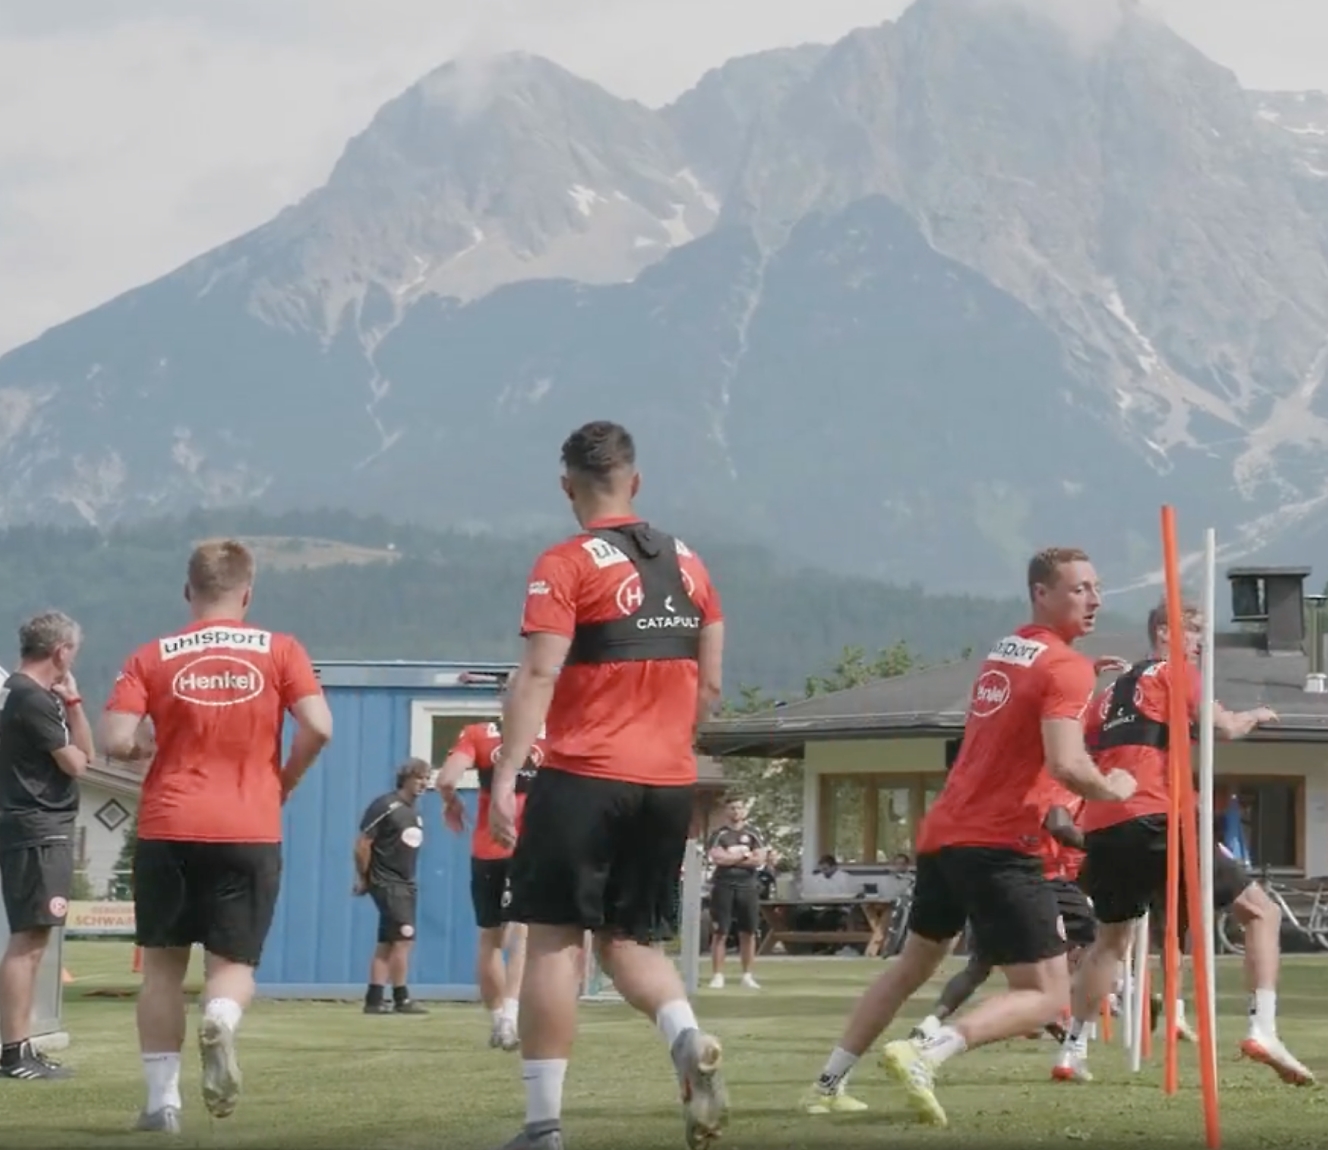 Fodboldspillere i røde trøjer træner udendørs med udsigt til bjerge i baggrunden.